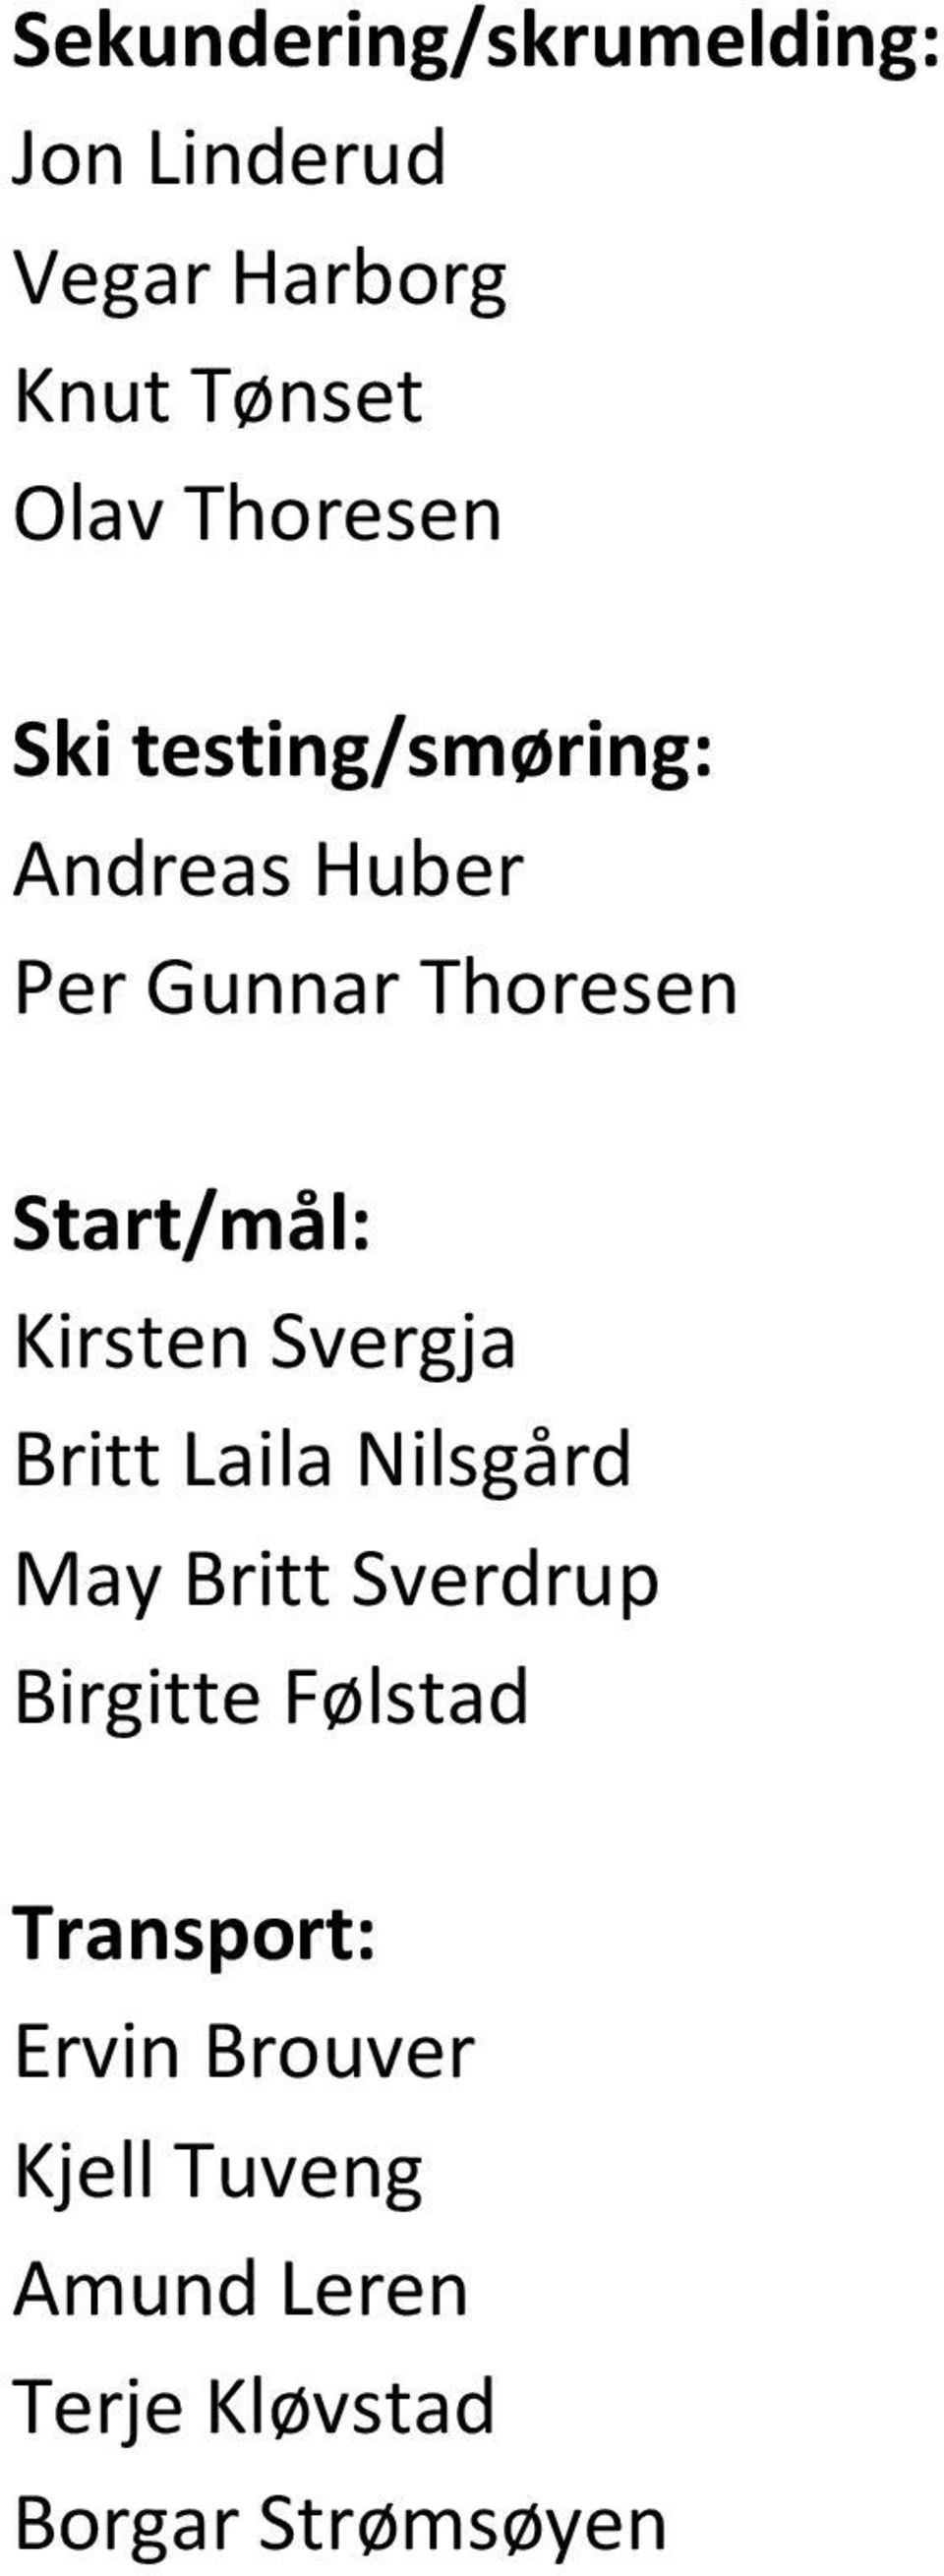 Kirsten Svergja Britt Laila Nilsgård May Britt Sverdrup Birgitte Følstad